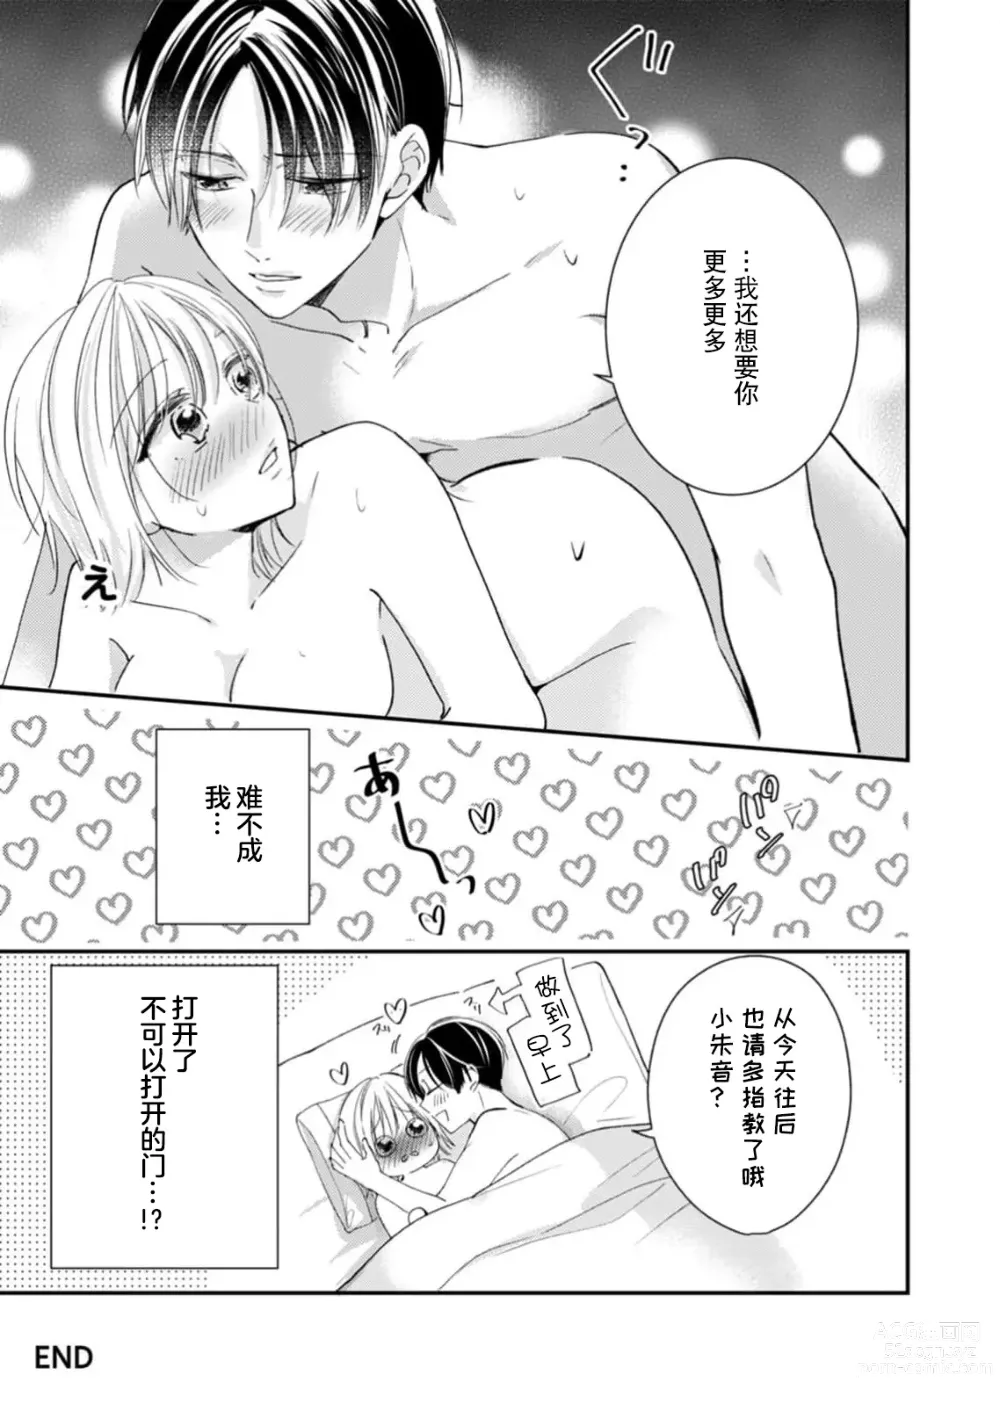 Page 28 of manga 「…那我不忍耐了哦？」在最深处好几次…年上男友的绝妙开关